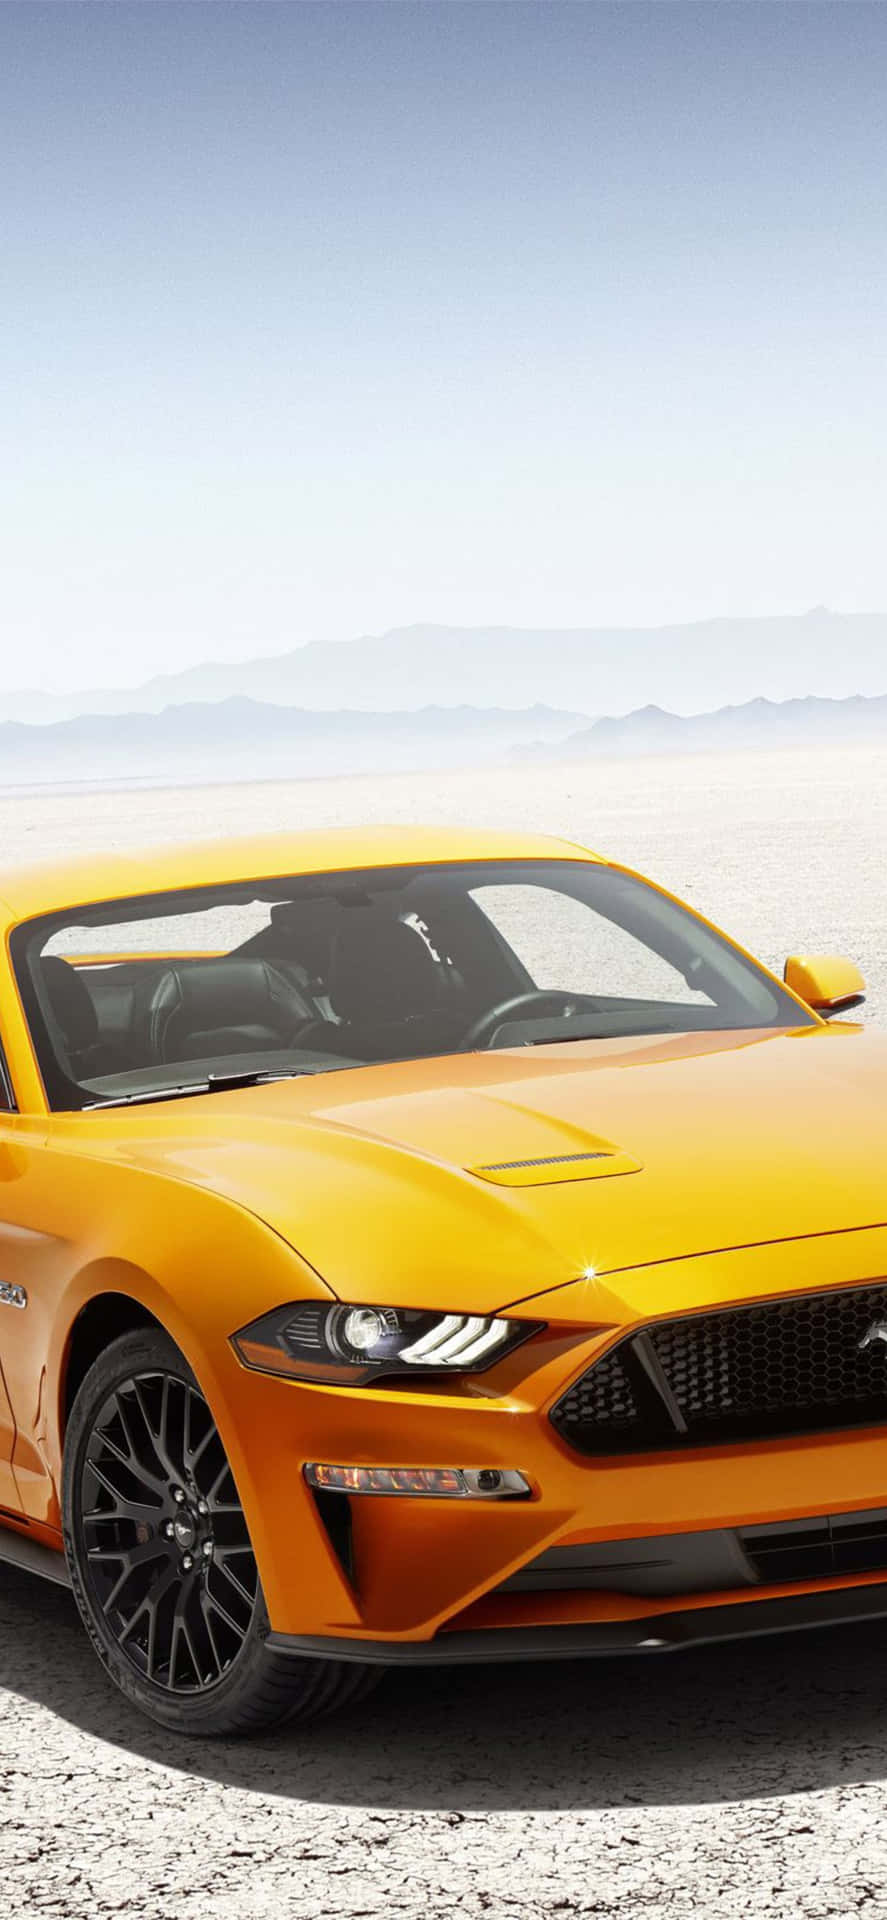 Elford Mustang Gt 2019 Se Muestra En El Desierto. Fondo de pantalla